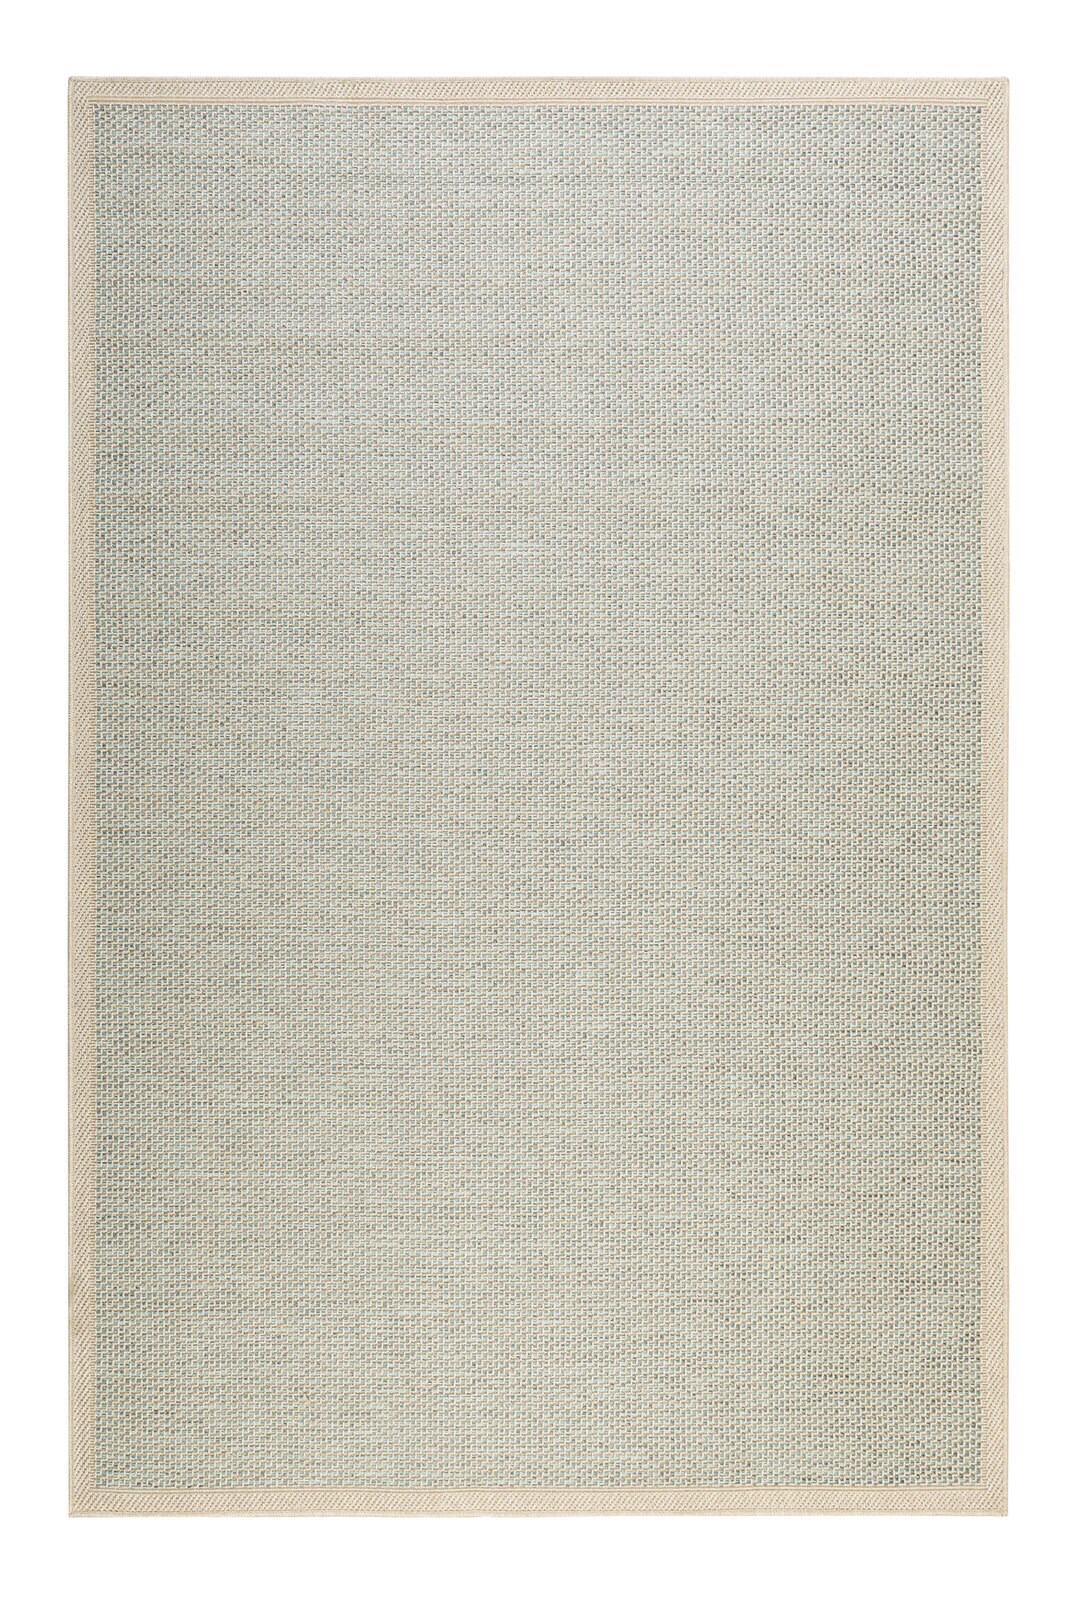 ESPRIT Outdoorteppich MIDLAND 80 x 150 cm beige/türkis